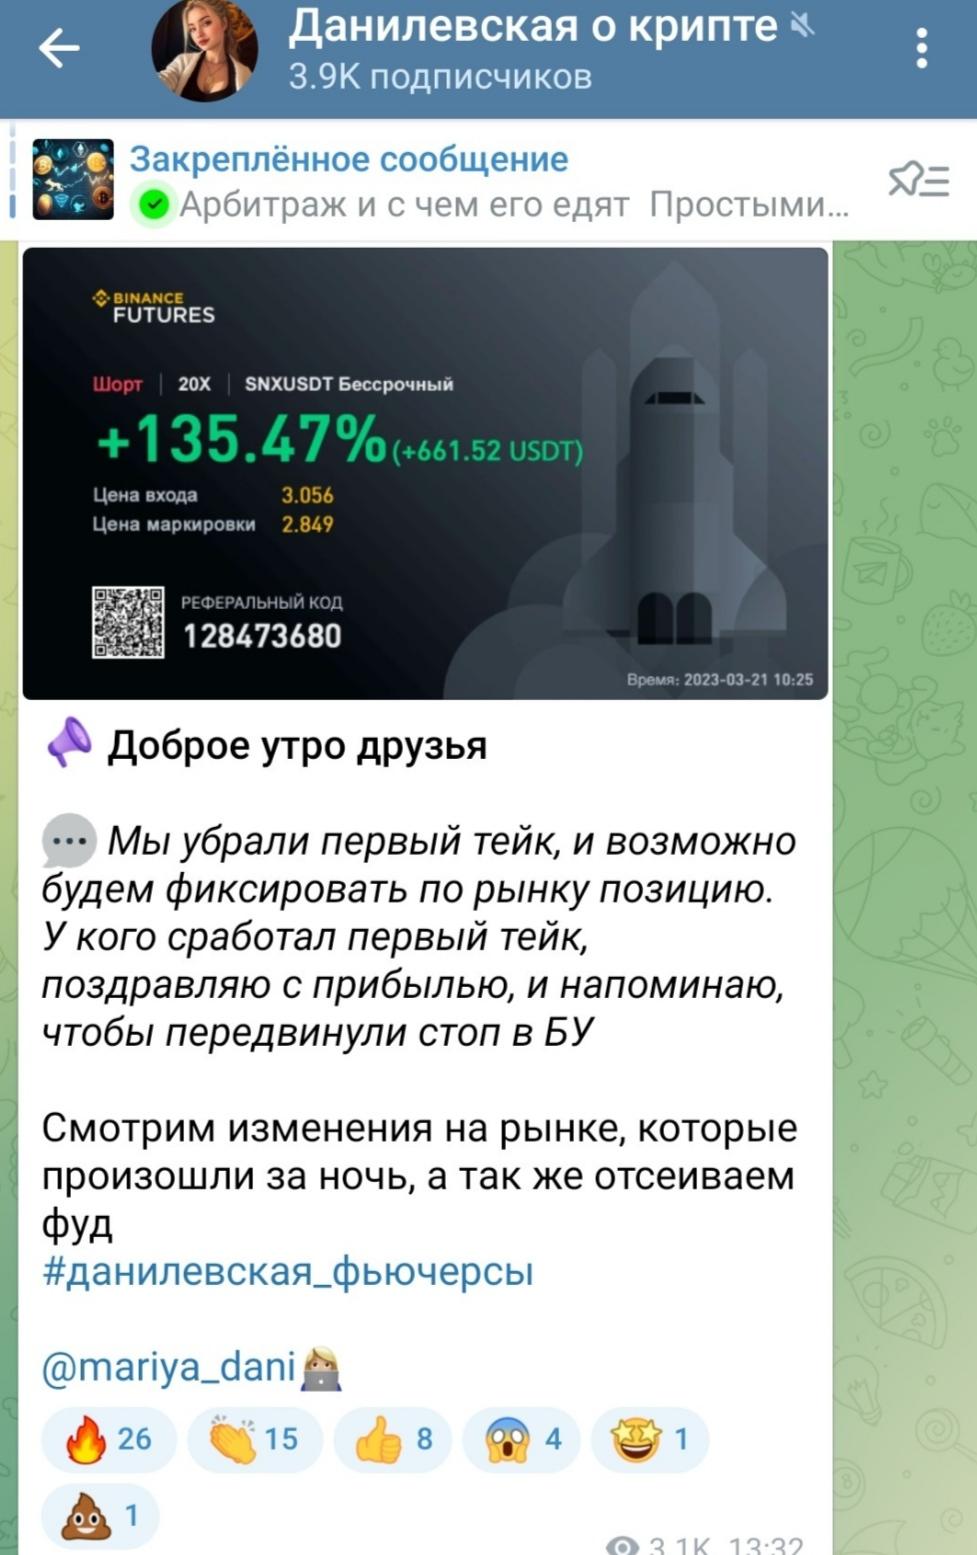 Данилевская О Крипте телеграмм